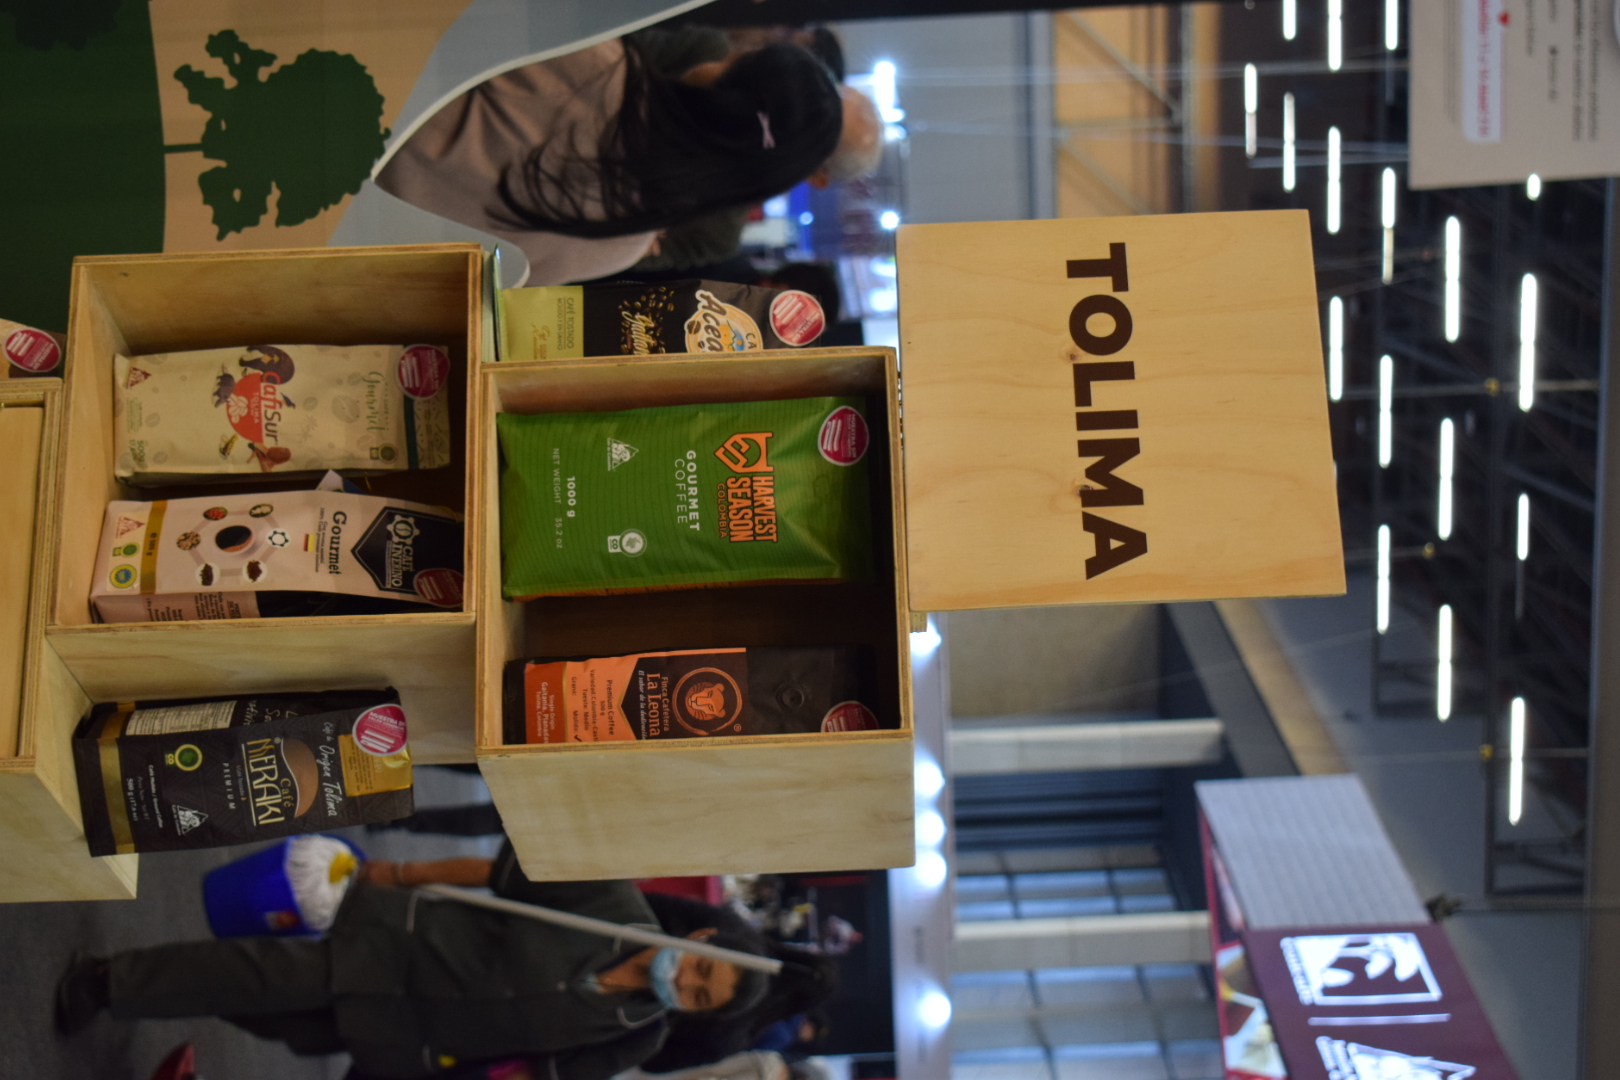 Los cafés exhibidos por el Tolima cuentan con la denominación de origen protegido, lo que garantiza una excelente calidad.